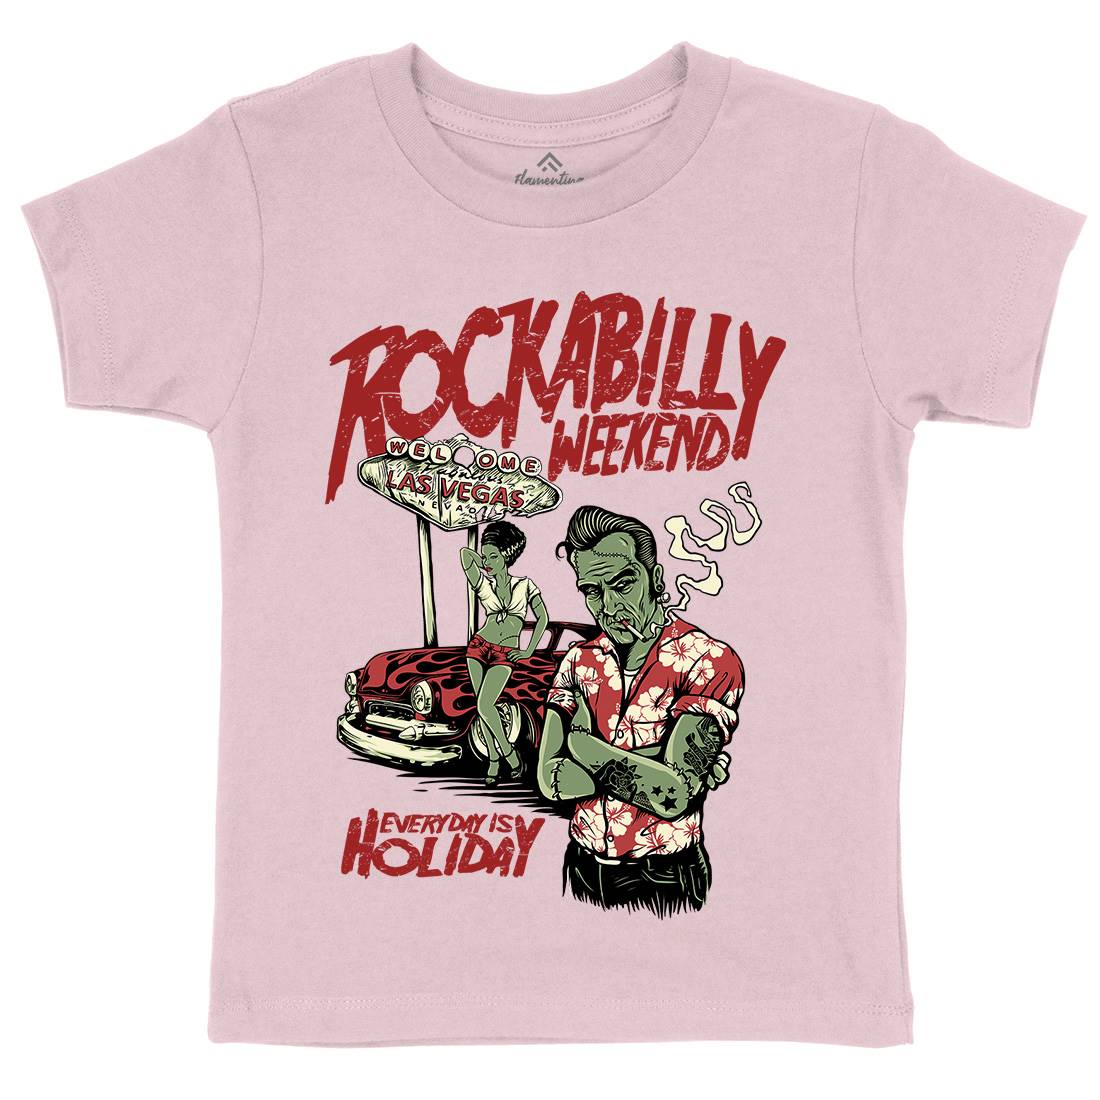 Rockabilly Kids Crew Neck T-Shirt Music D072